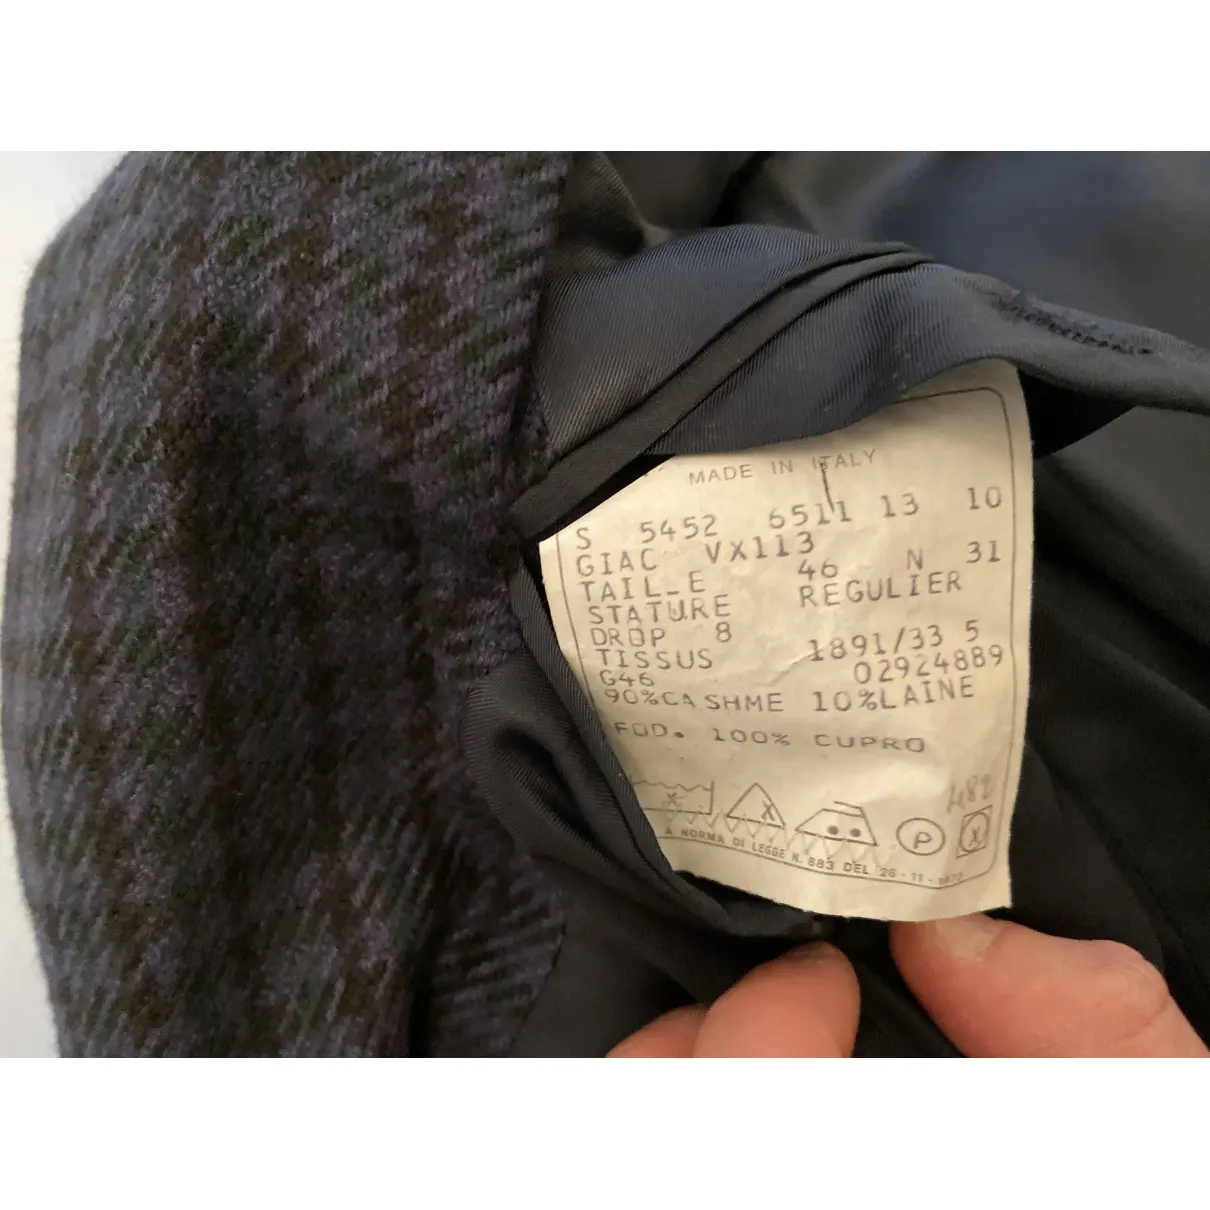 Buy Protagonist Cashmere vest online - Vintage